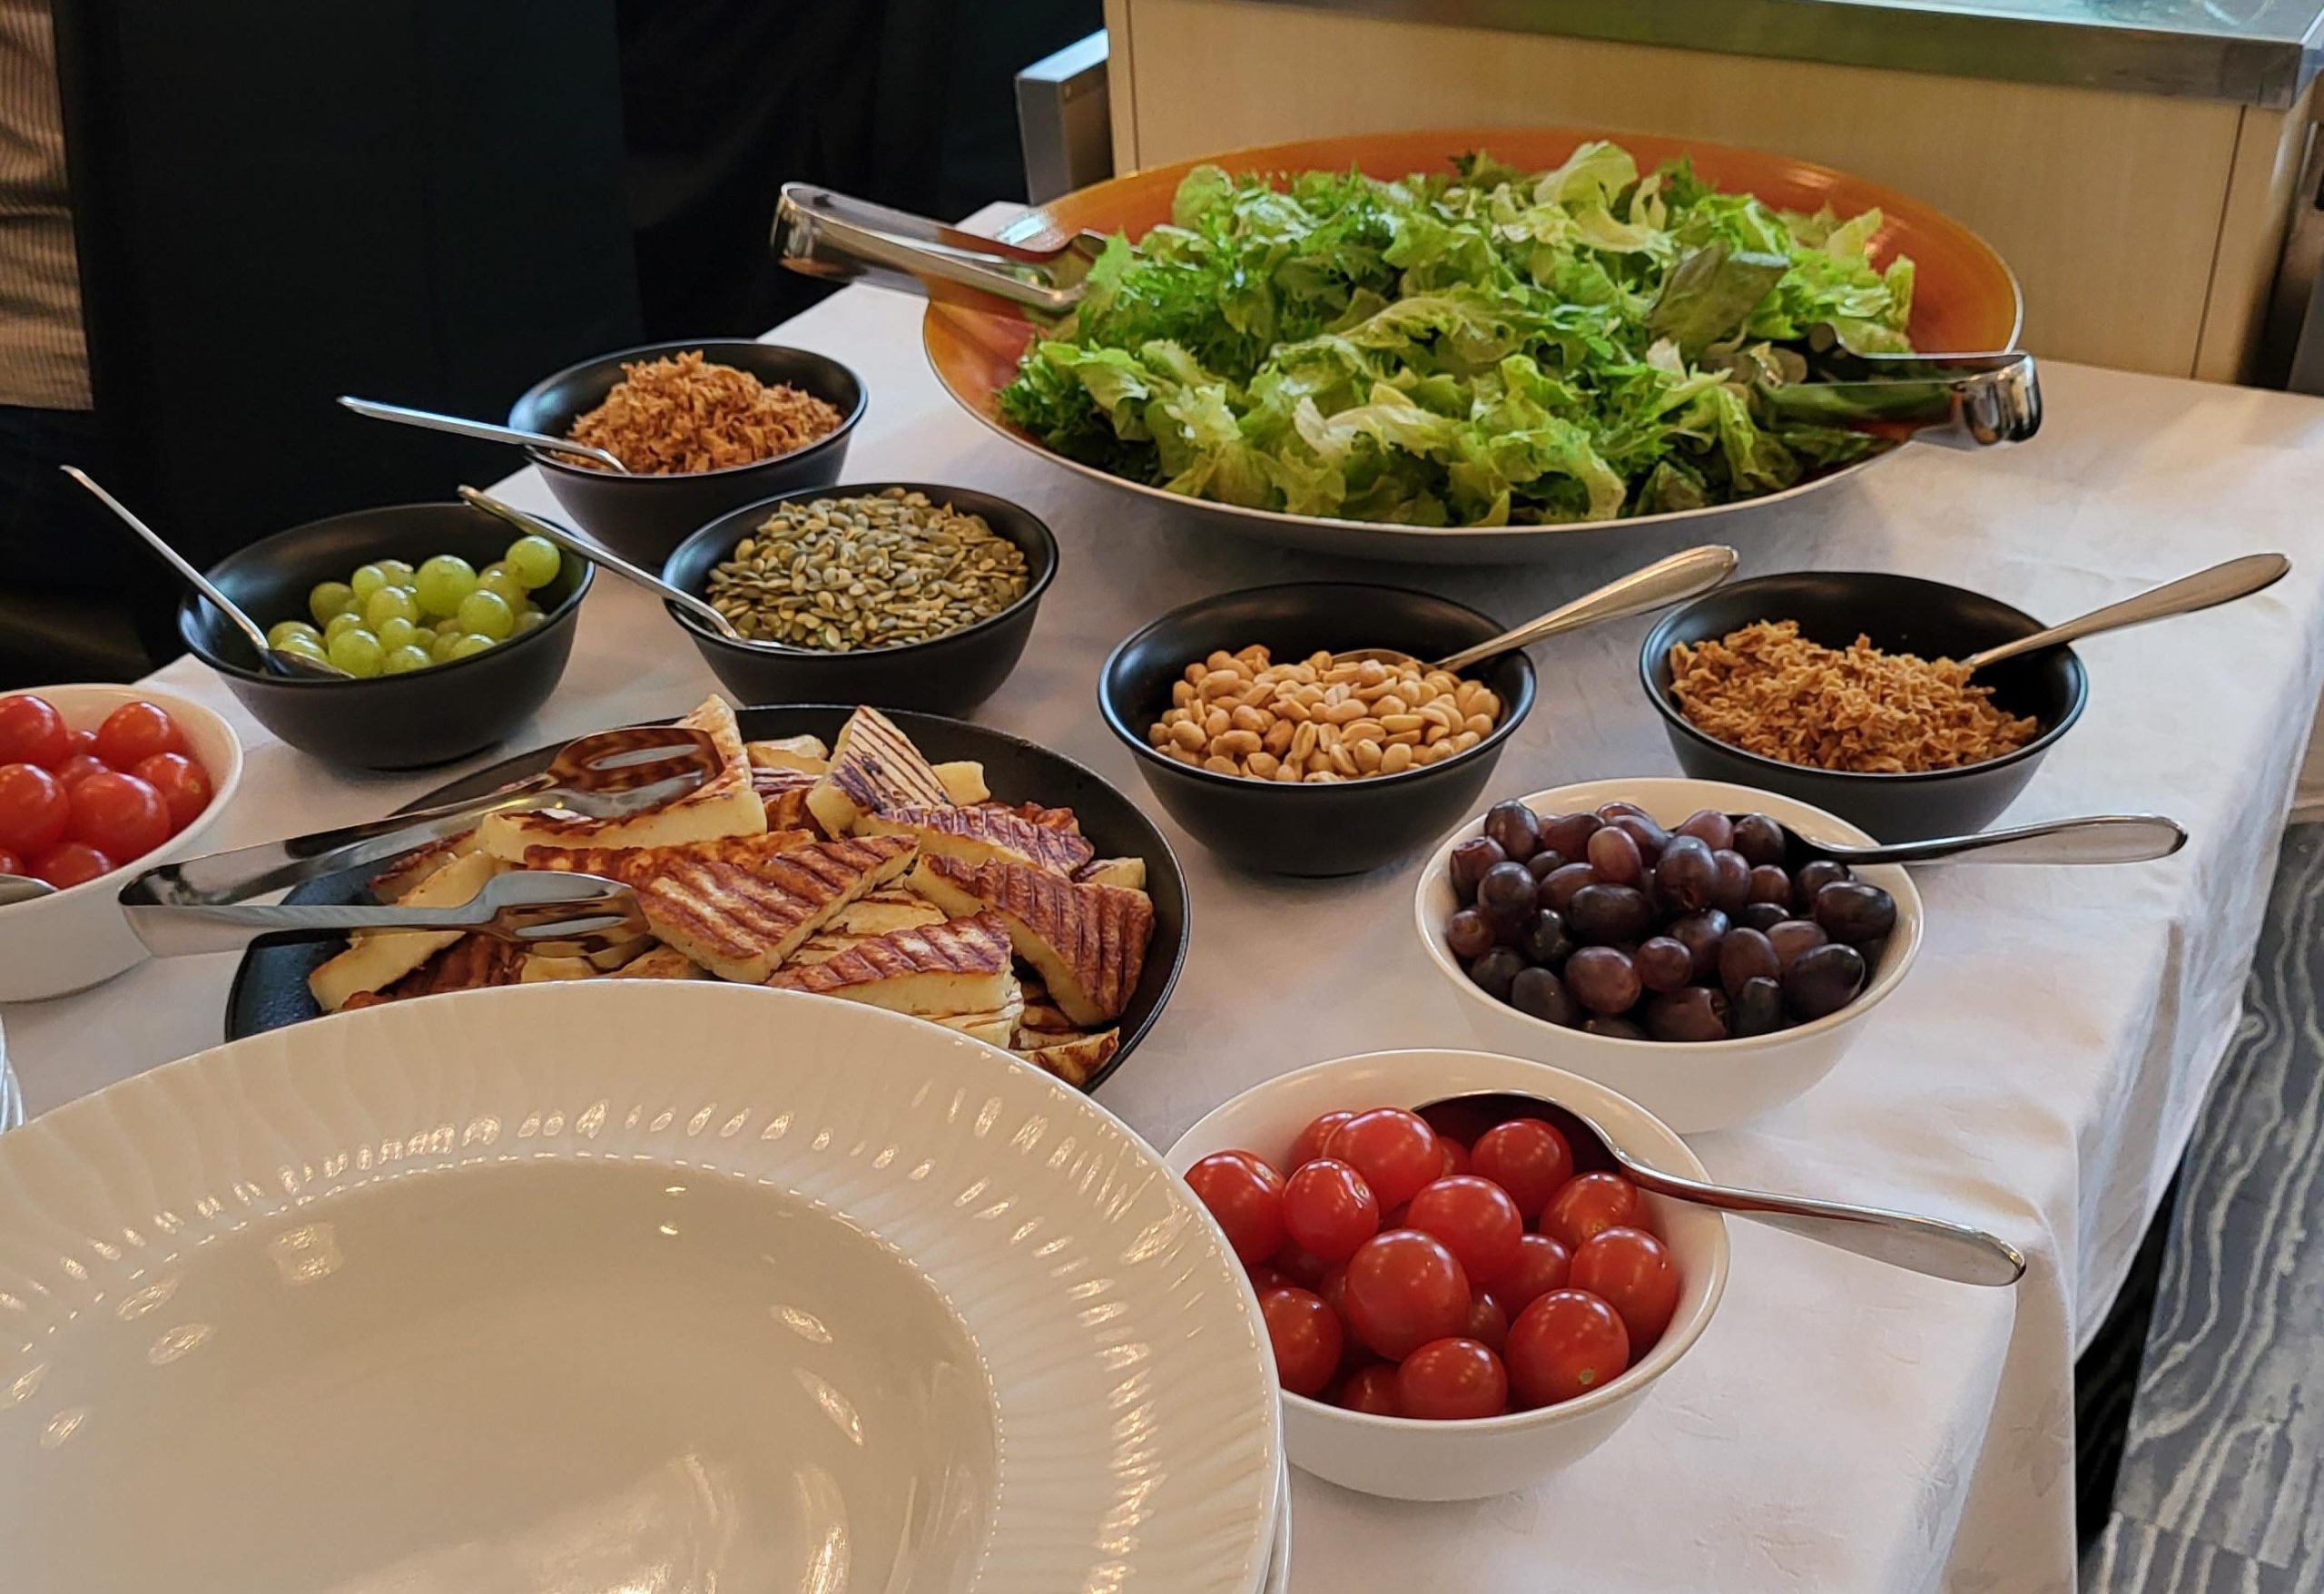 Valkeakosken ammattiopisto, VAAO, pöydällä koottavan salaattilounaan raaka-aineet kulhoissa, vihanneksia, hedelmiä, pähkinöitä, halloumia.